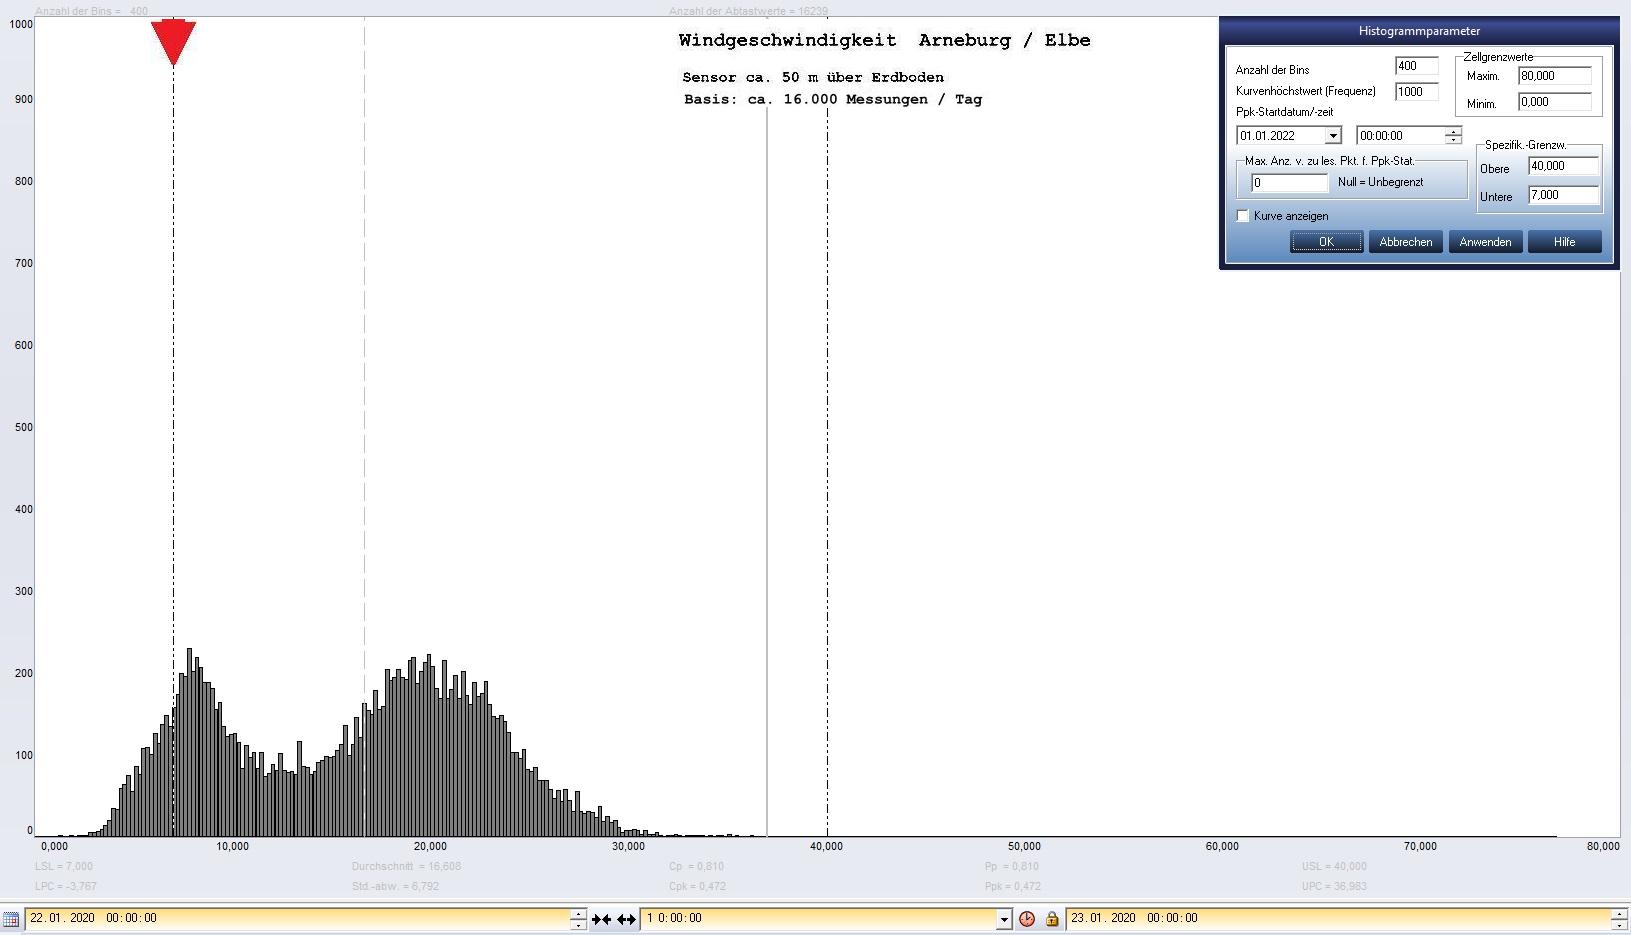 Arneburg Tages-Histogramm Winddaten, 22.01.2020
  Histogramm, Sensor auf Gebude, ca. 50 m ber Erdboden, Basis: 5s-Aufzeichnung